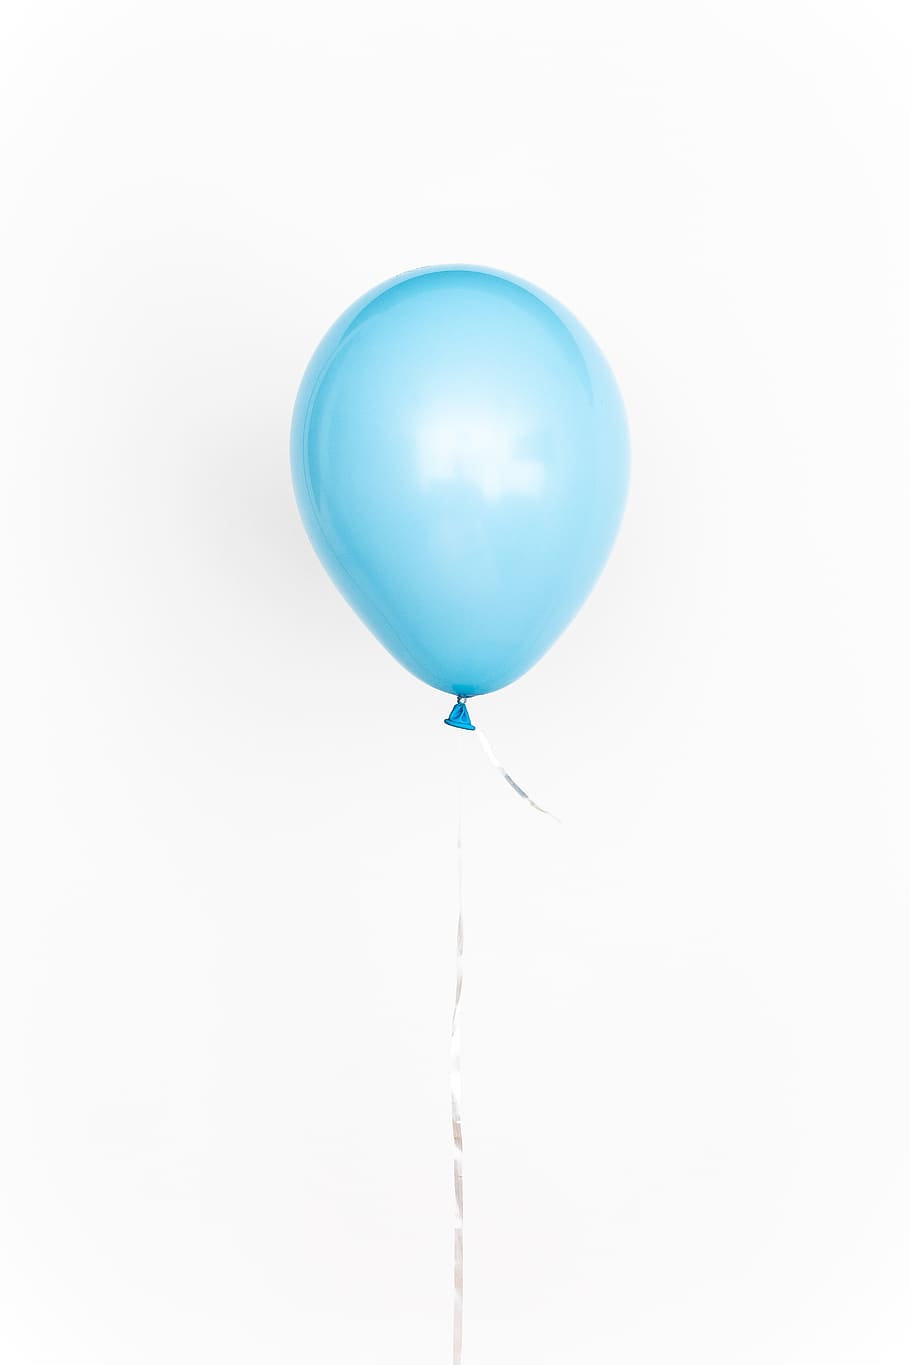 balon, biru, ulang tahun, warna-warni, perayaan, terbang, dekorasi, float, helium, merayakan